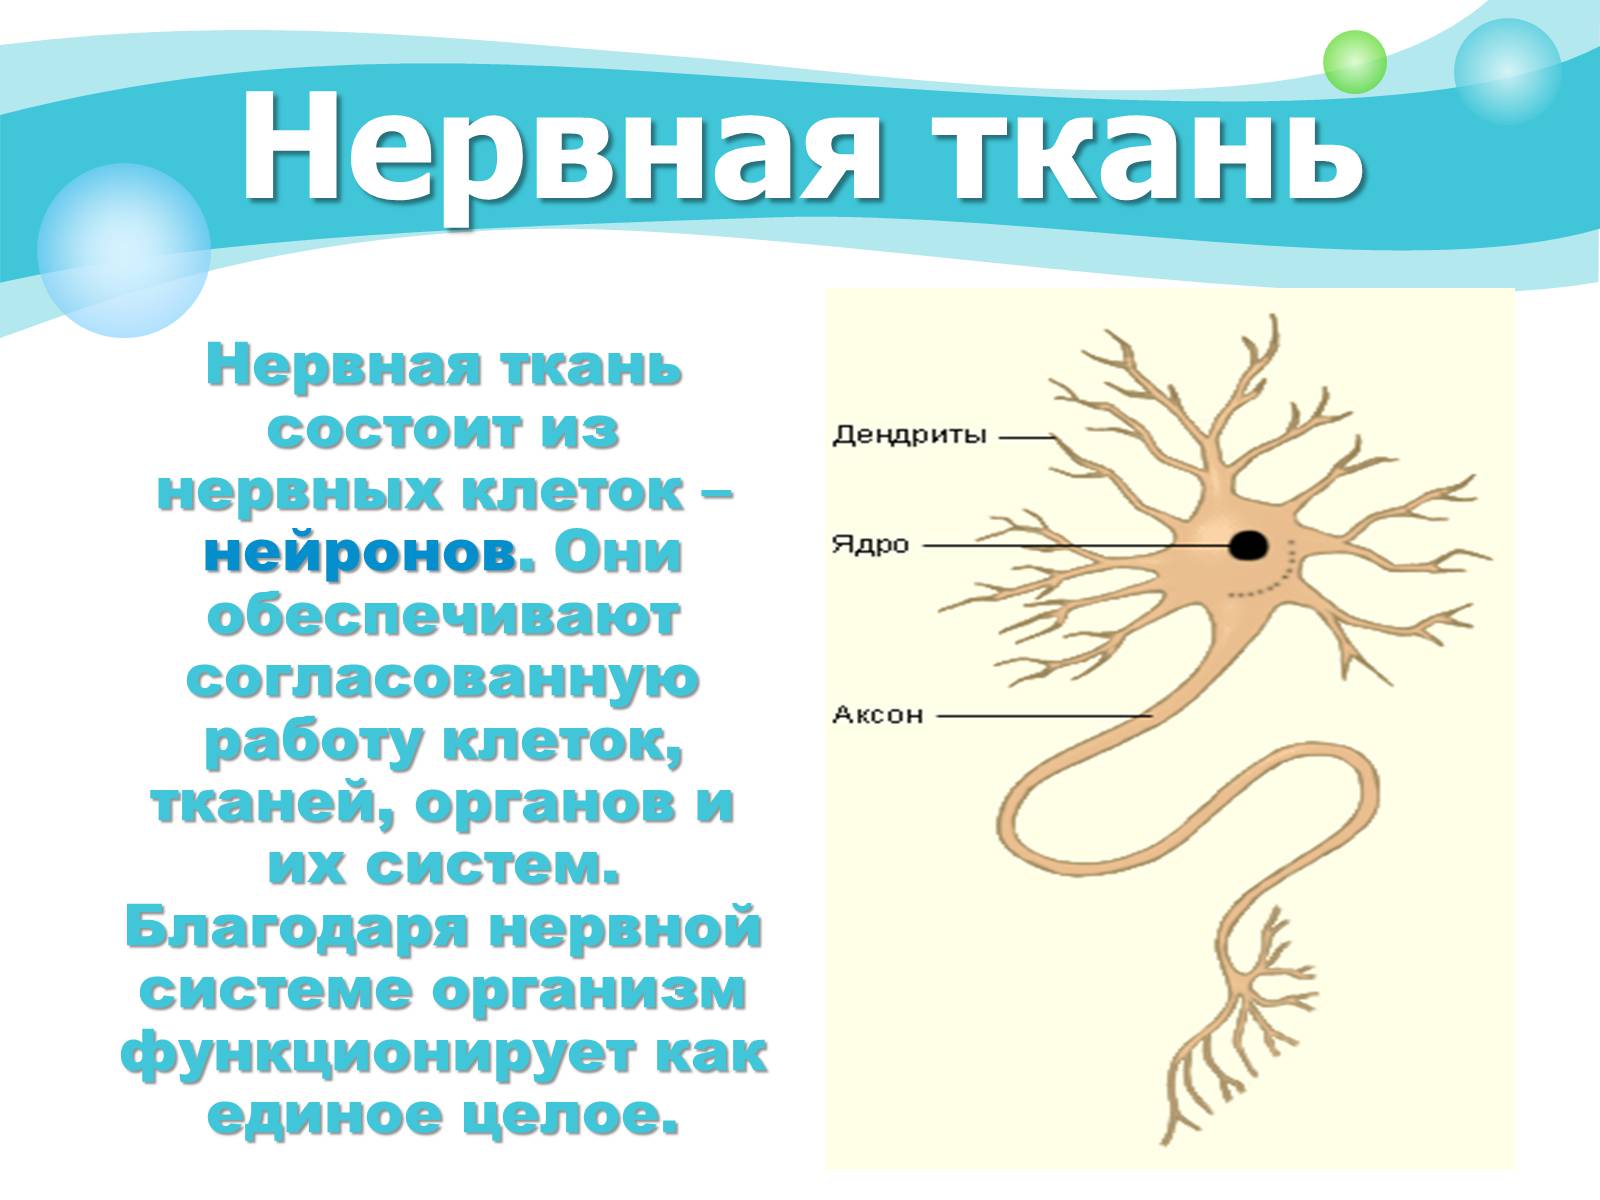 Нервная ткань состоит из